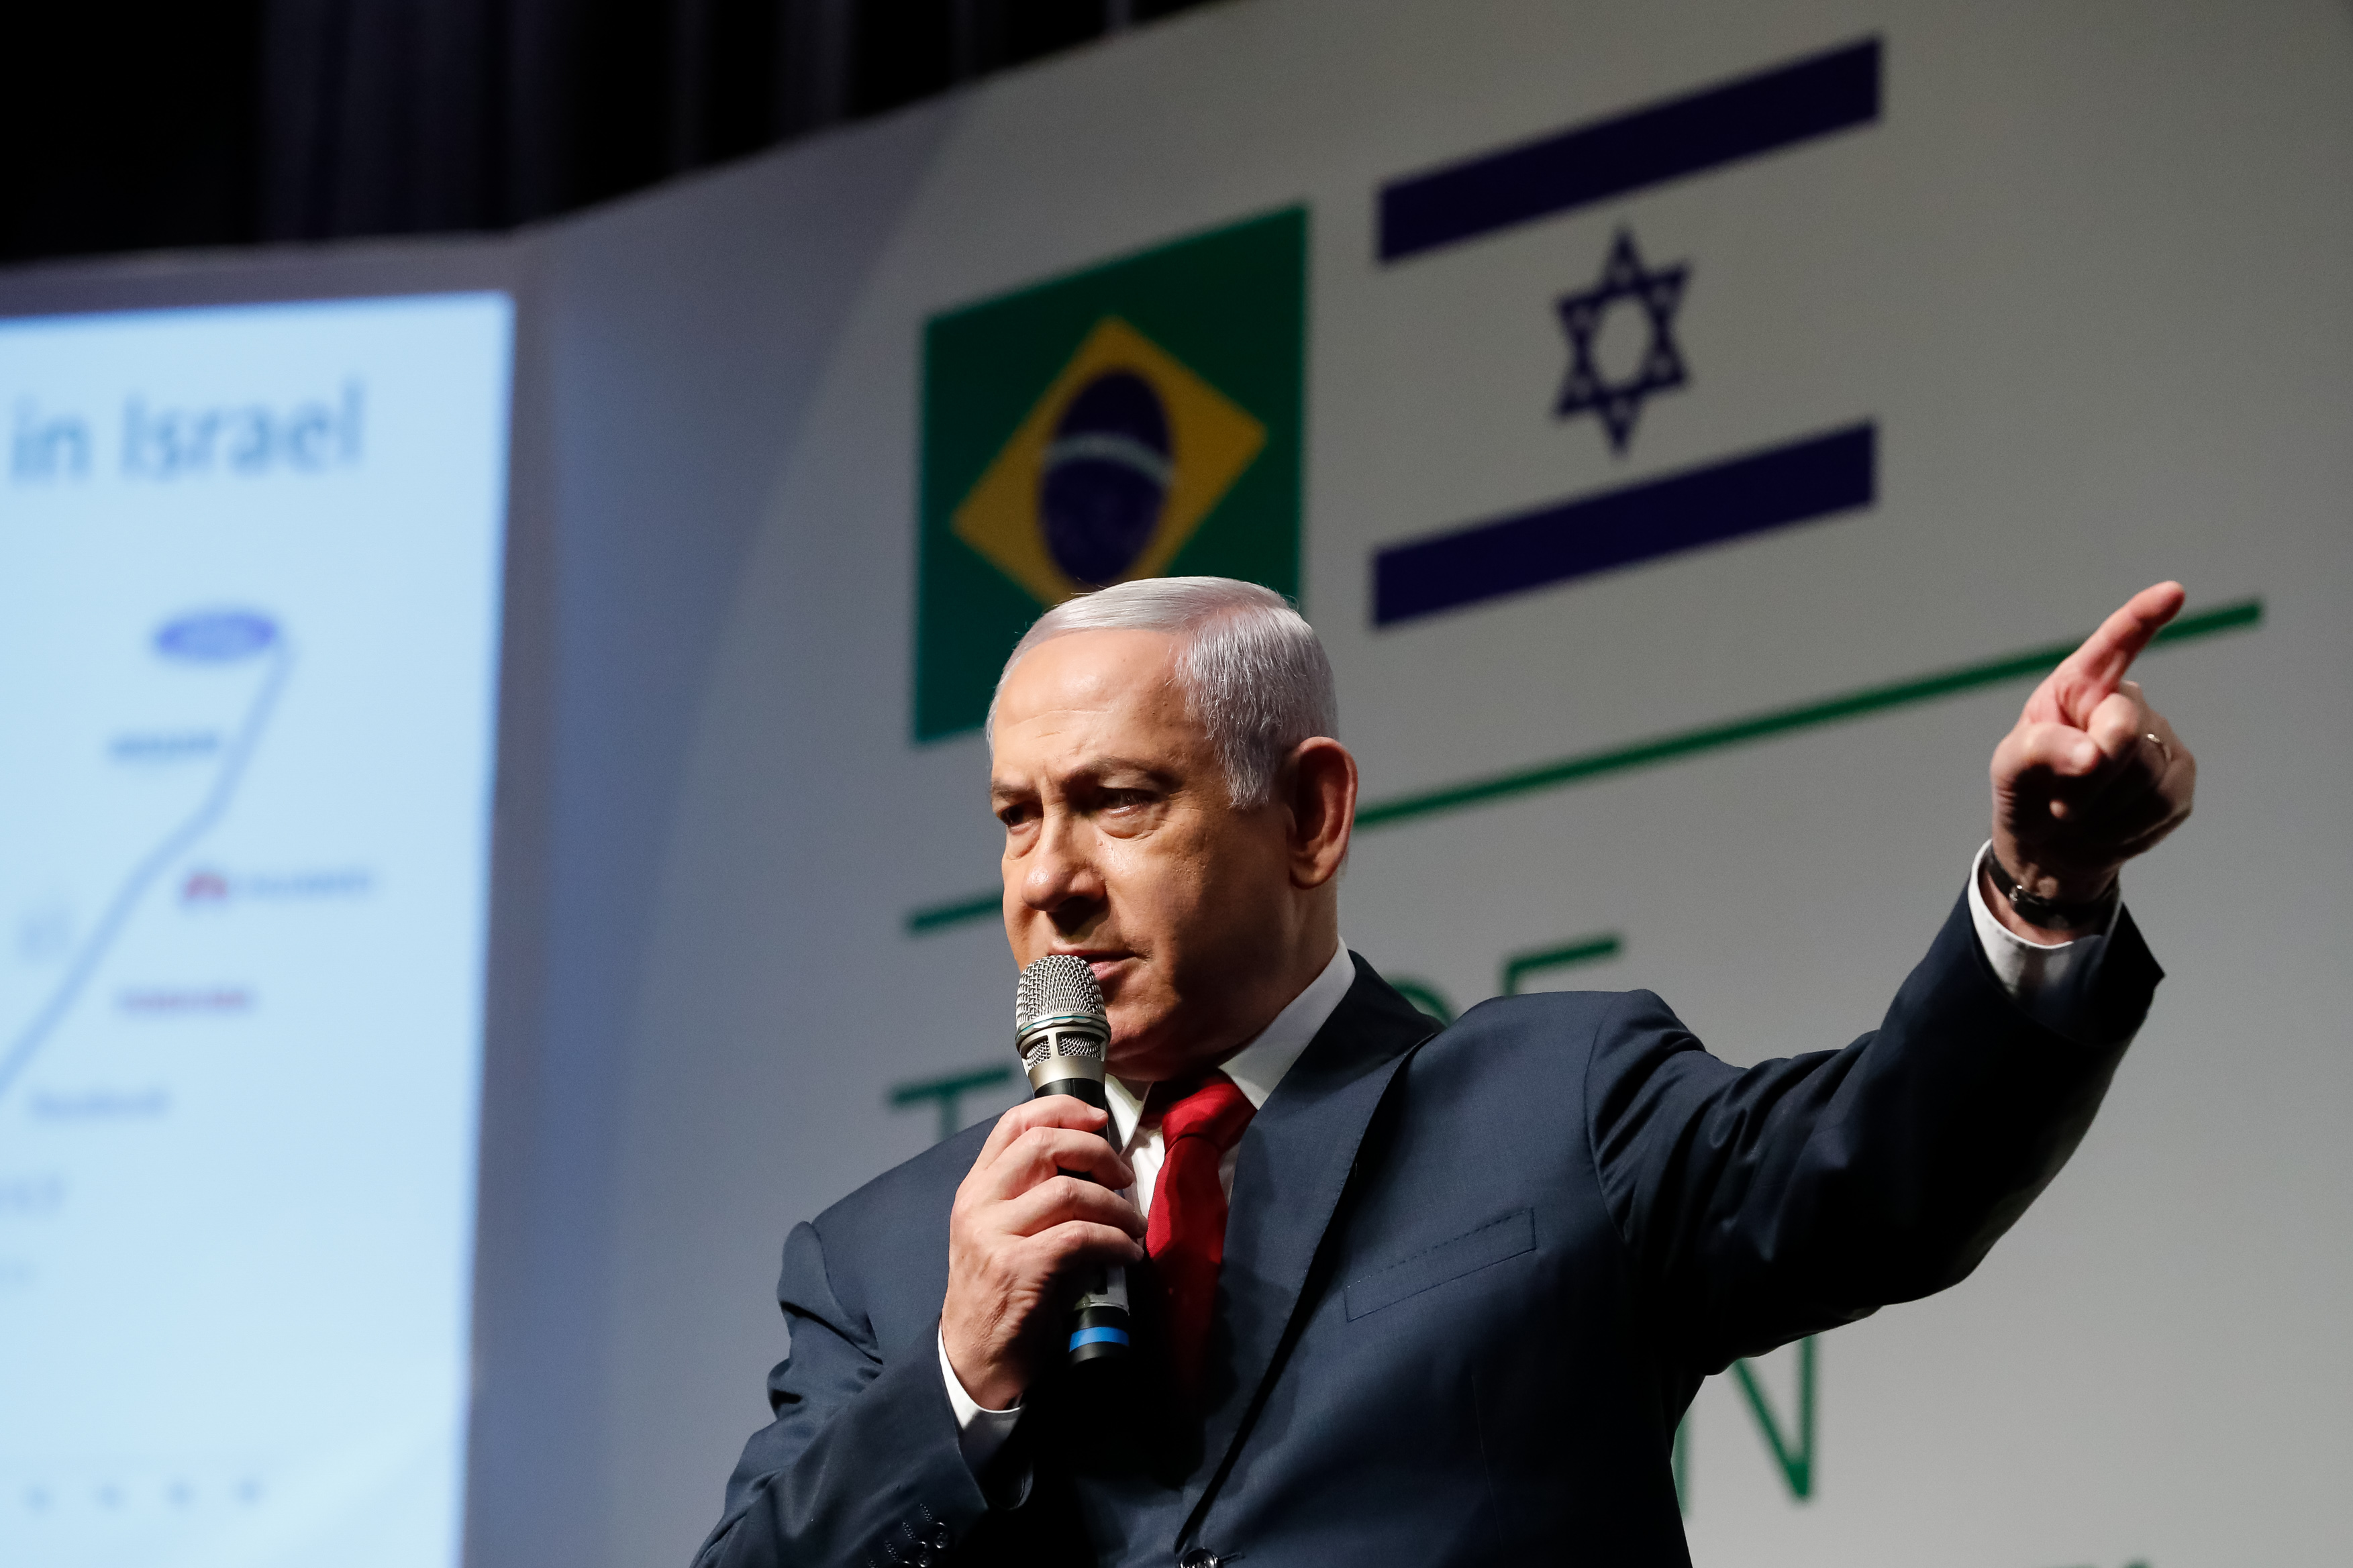 'As palavras do presidente do Brasil são vergonhosas e graves. Isso banaliza o Holocausto e prejudica o povo judeu e o direito de Israel de se defender', disse o primeiro-ministro de Israel